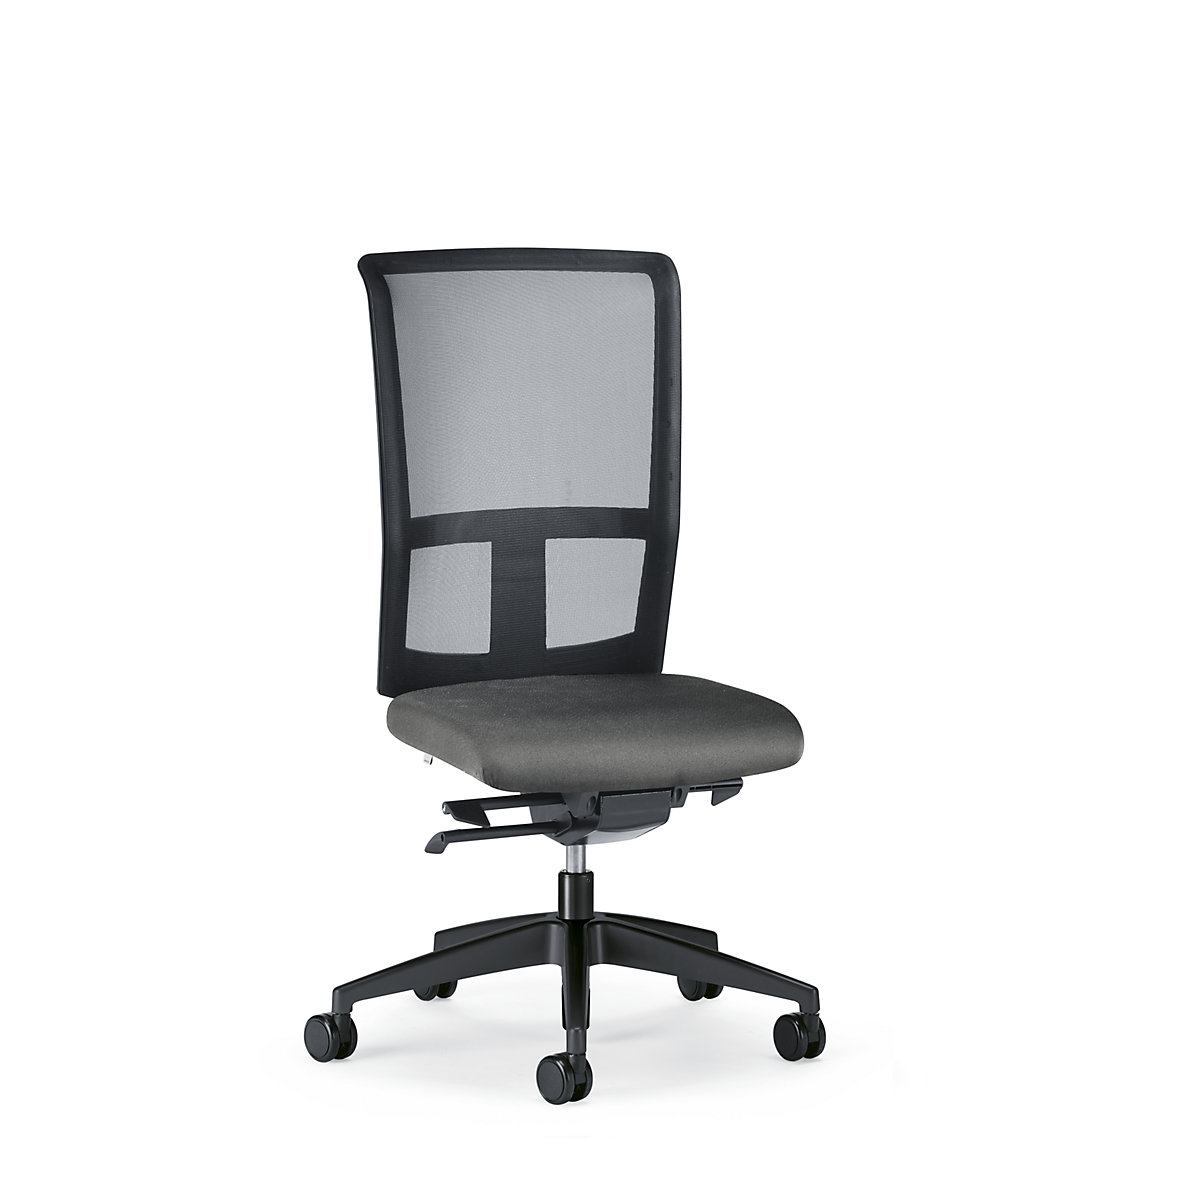 Bürodrehstuhl GOAL AIR, Rückenlehnenhöhe 545 mm interstuhl, Gestell schwarz, mit weichen Rollen, eisengrau, Sitztiefe 410 mm-1